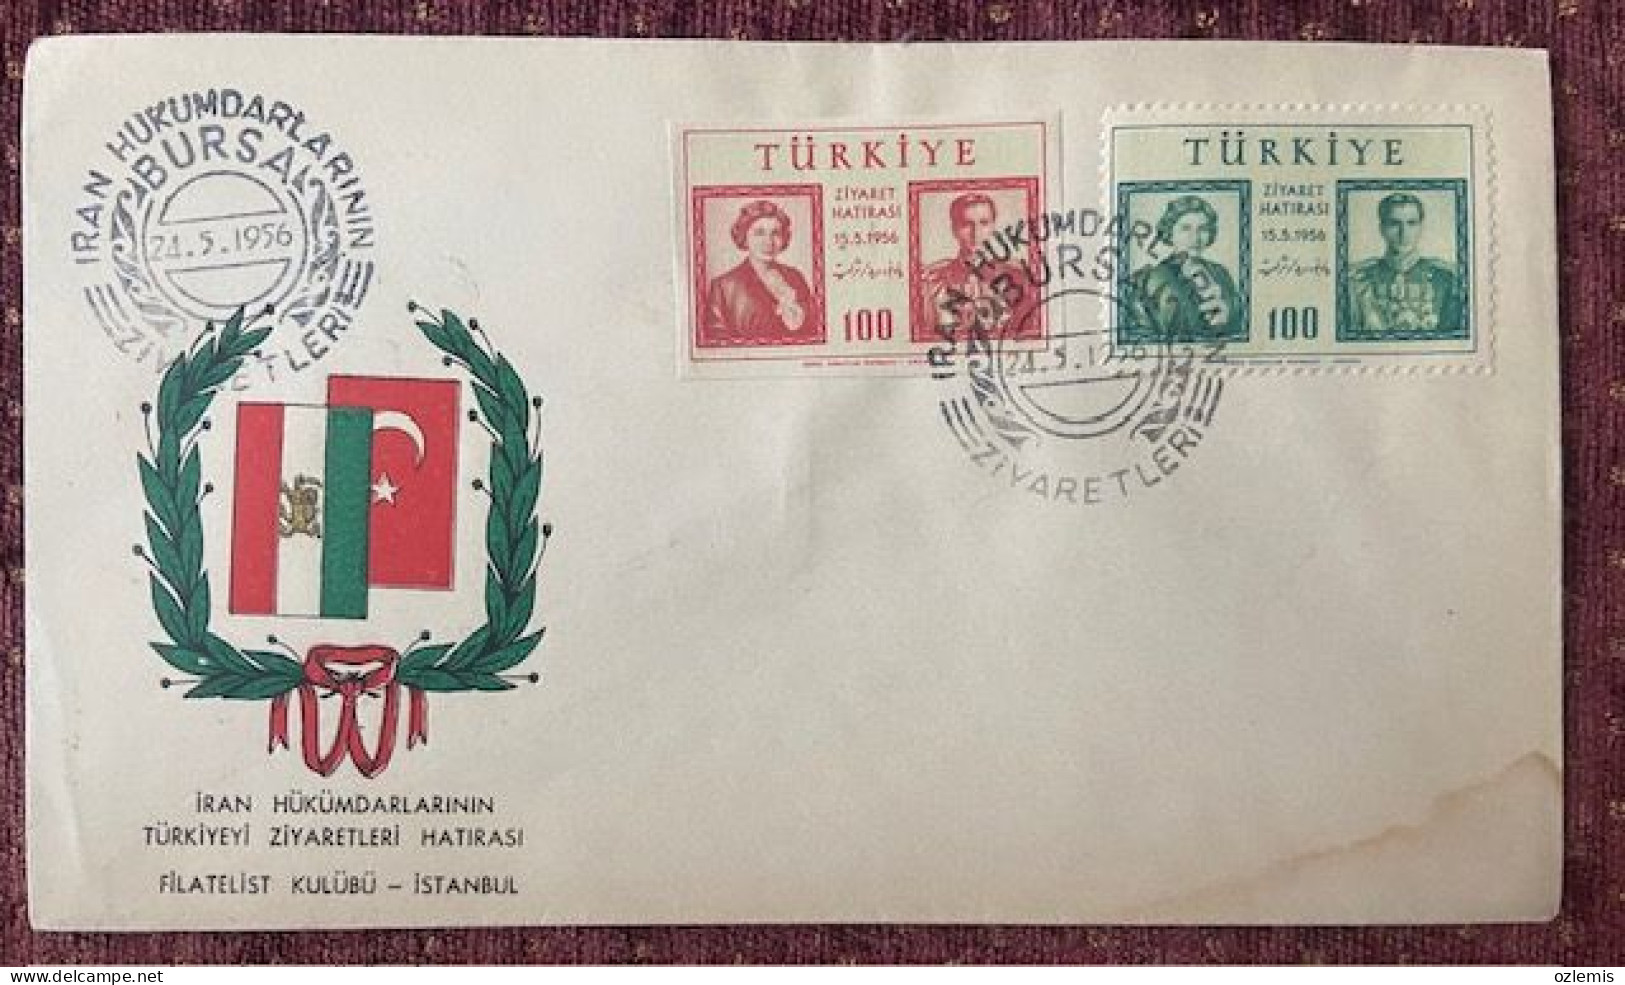 TURKEY,TURKEI,TURQUIE , MEMORY OF ,IRAN'S,VISITS TO TURKEY ,1956 ,COVER - Briefe U. Dokumente